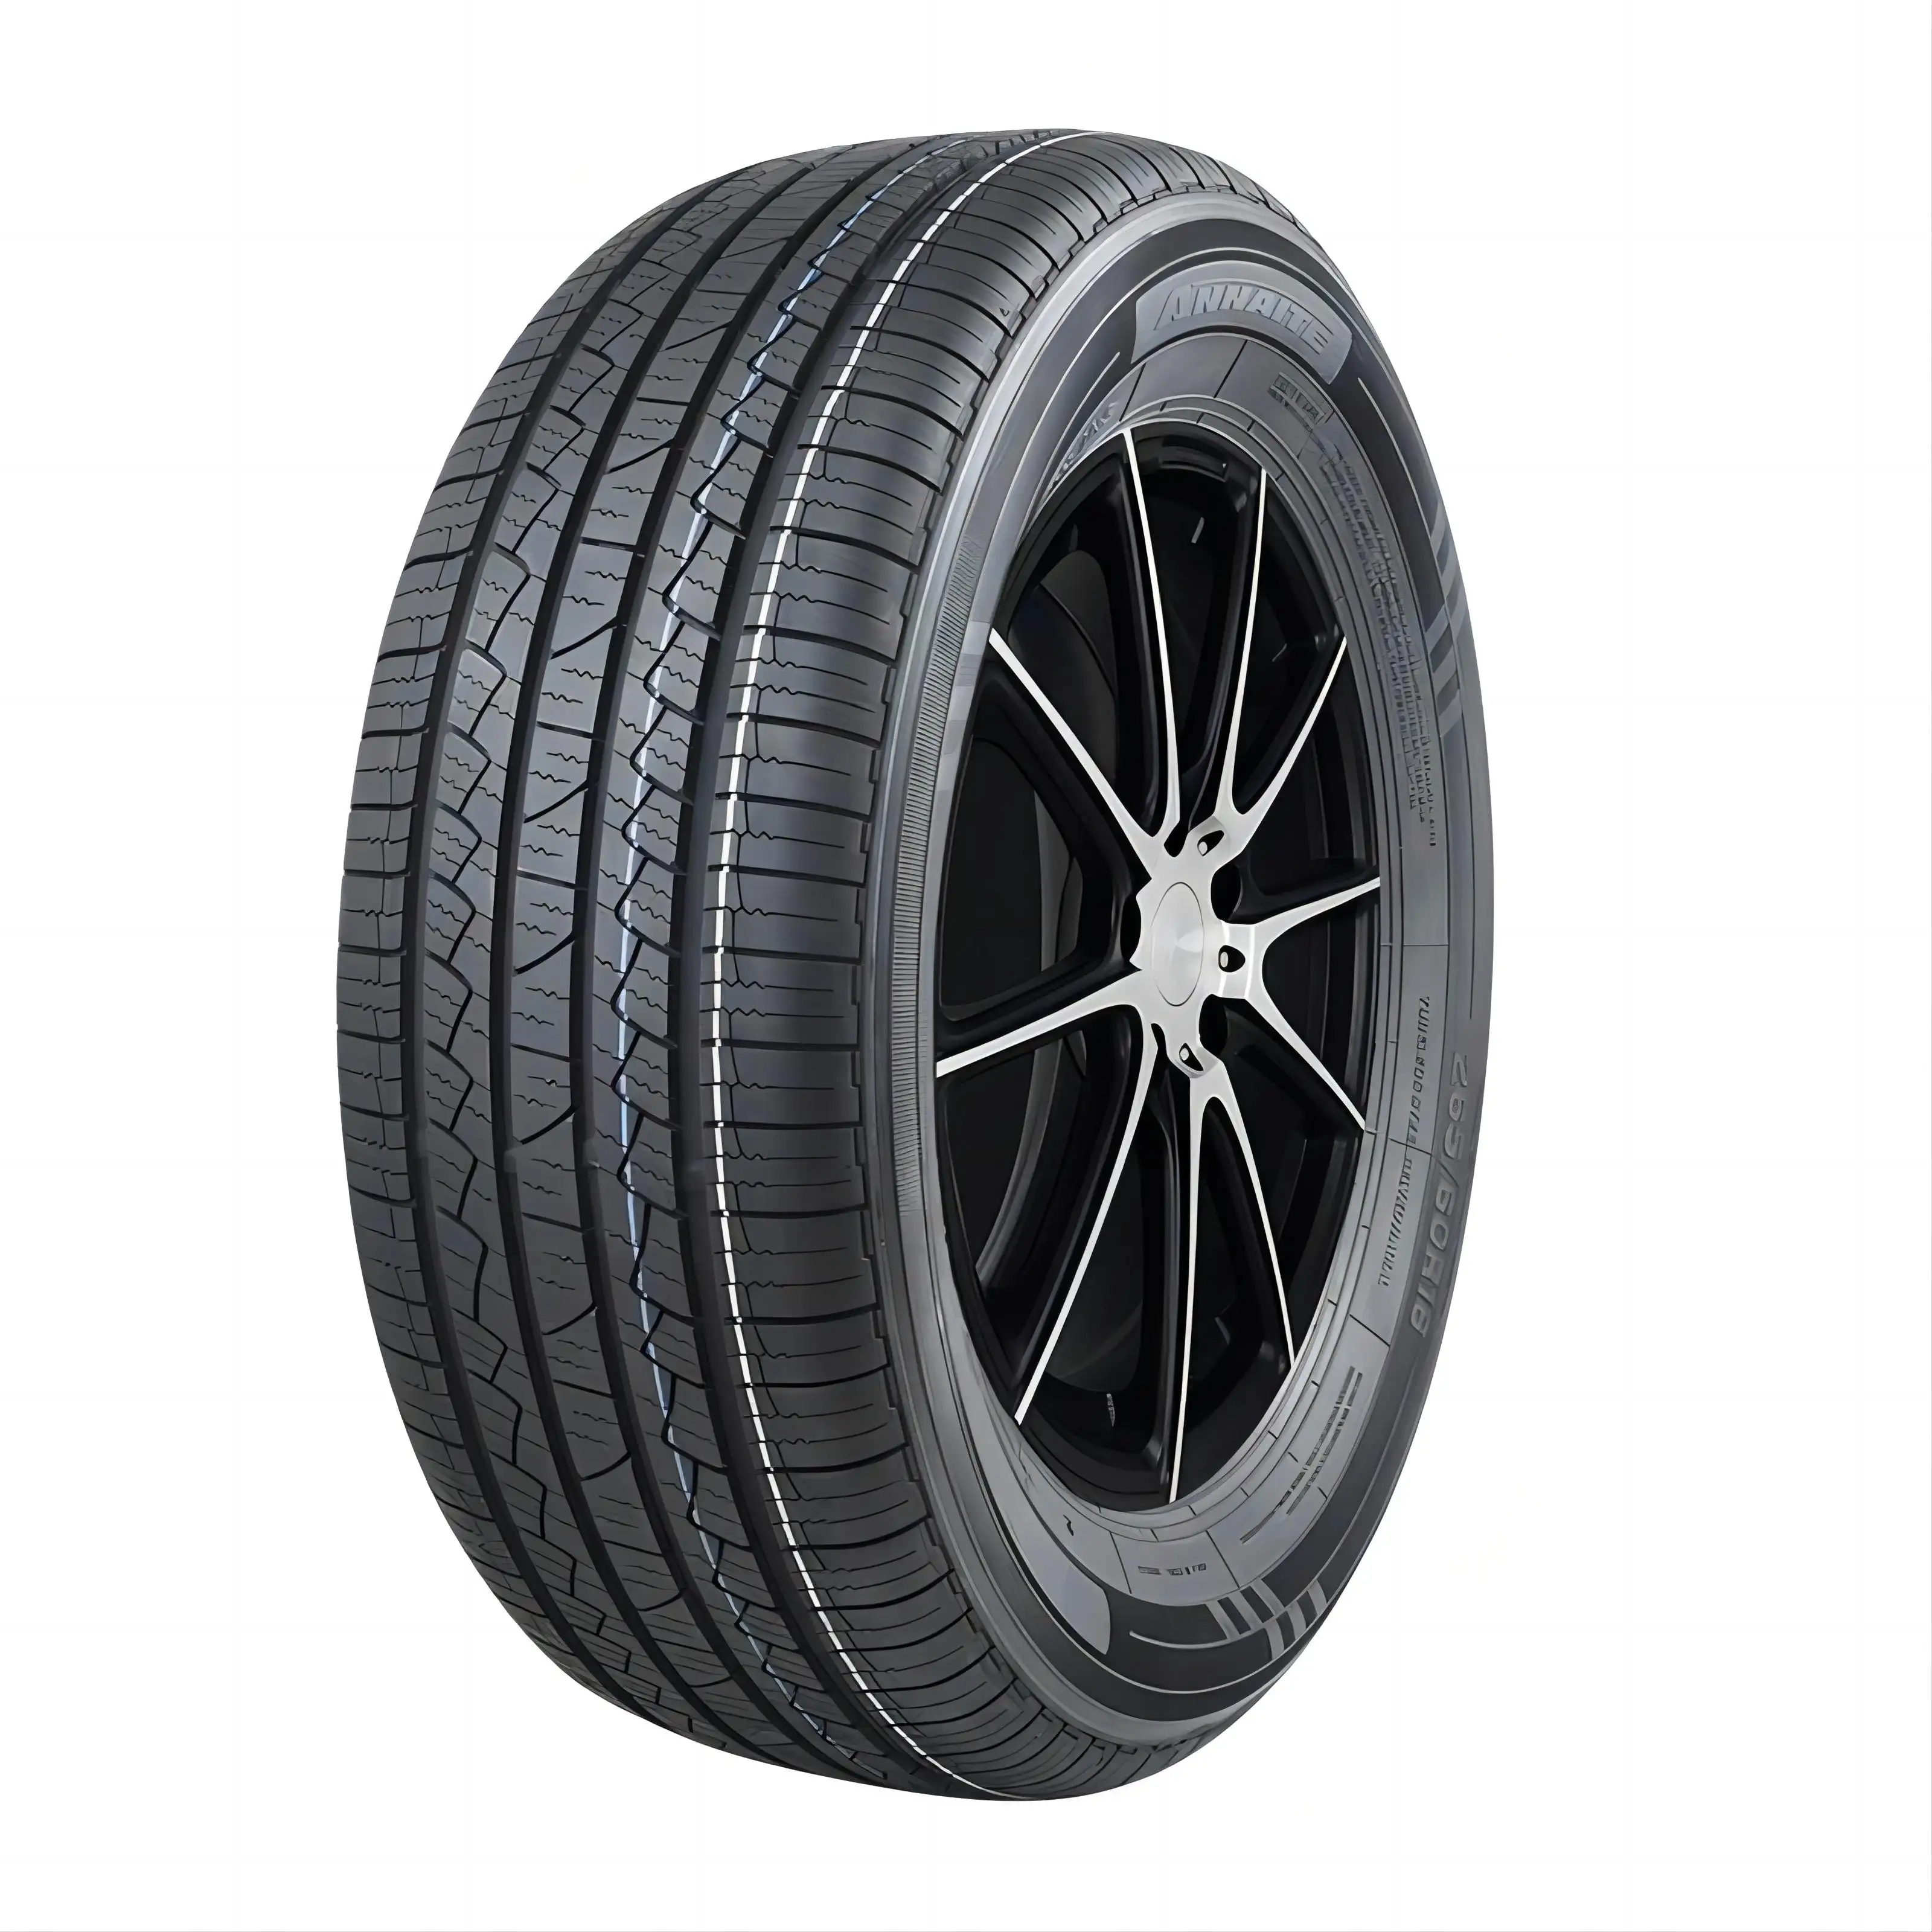 R20 precio bajo neumáticos de turismos Premium 275 60r20 neumático de fábrica de China 285 45/20 285 50R20 neumáticos de descuento para coches